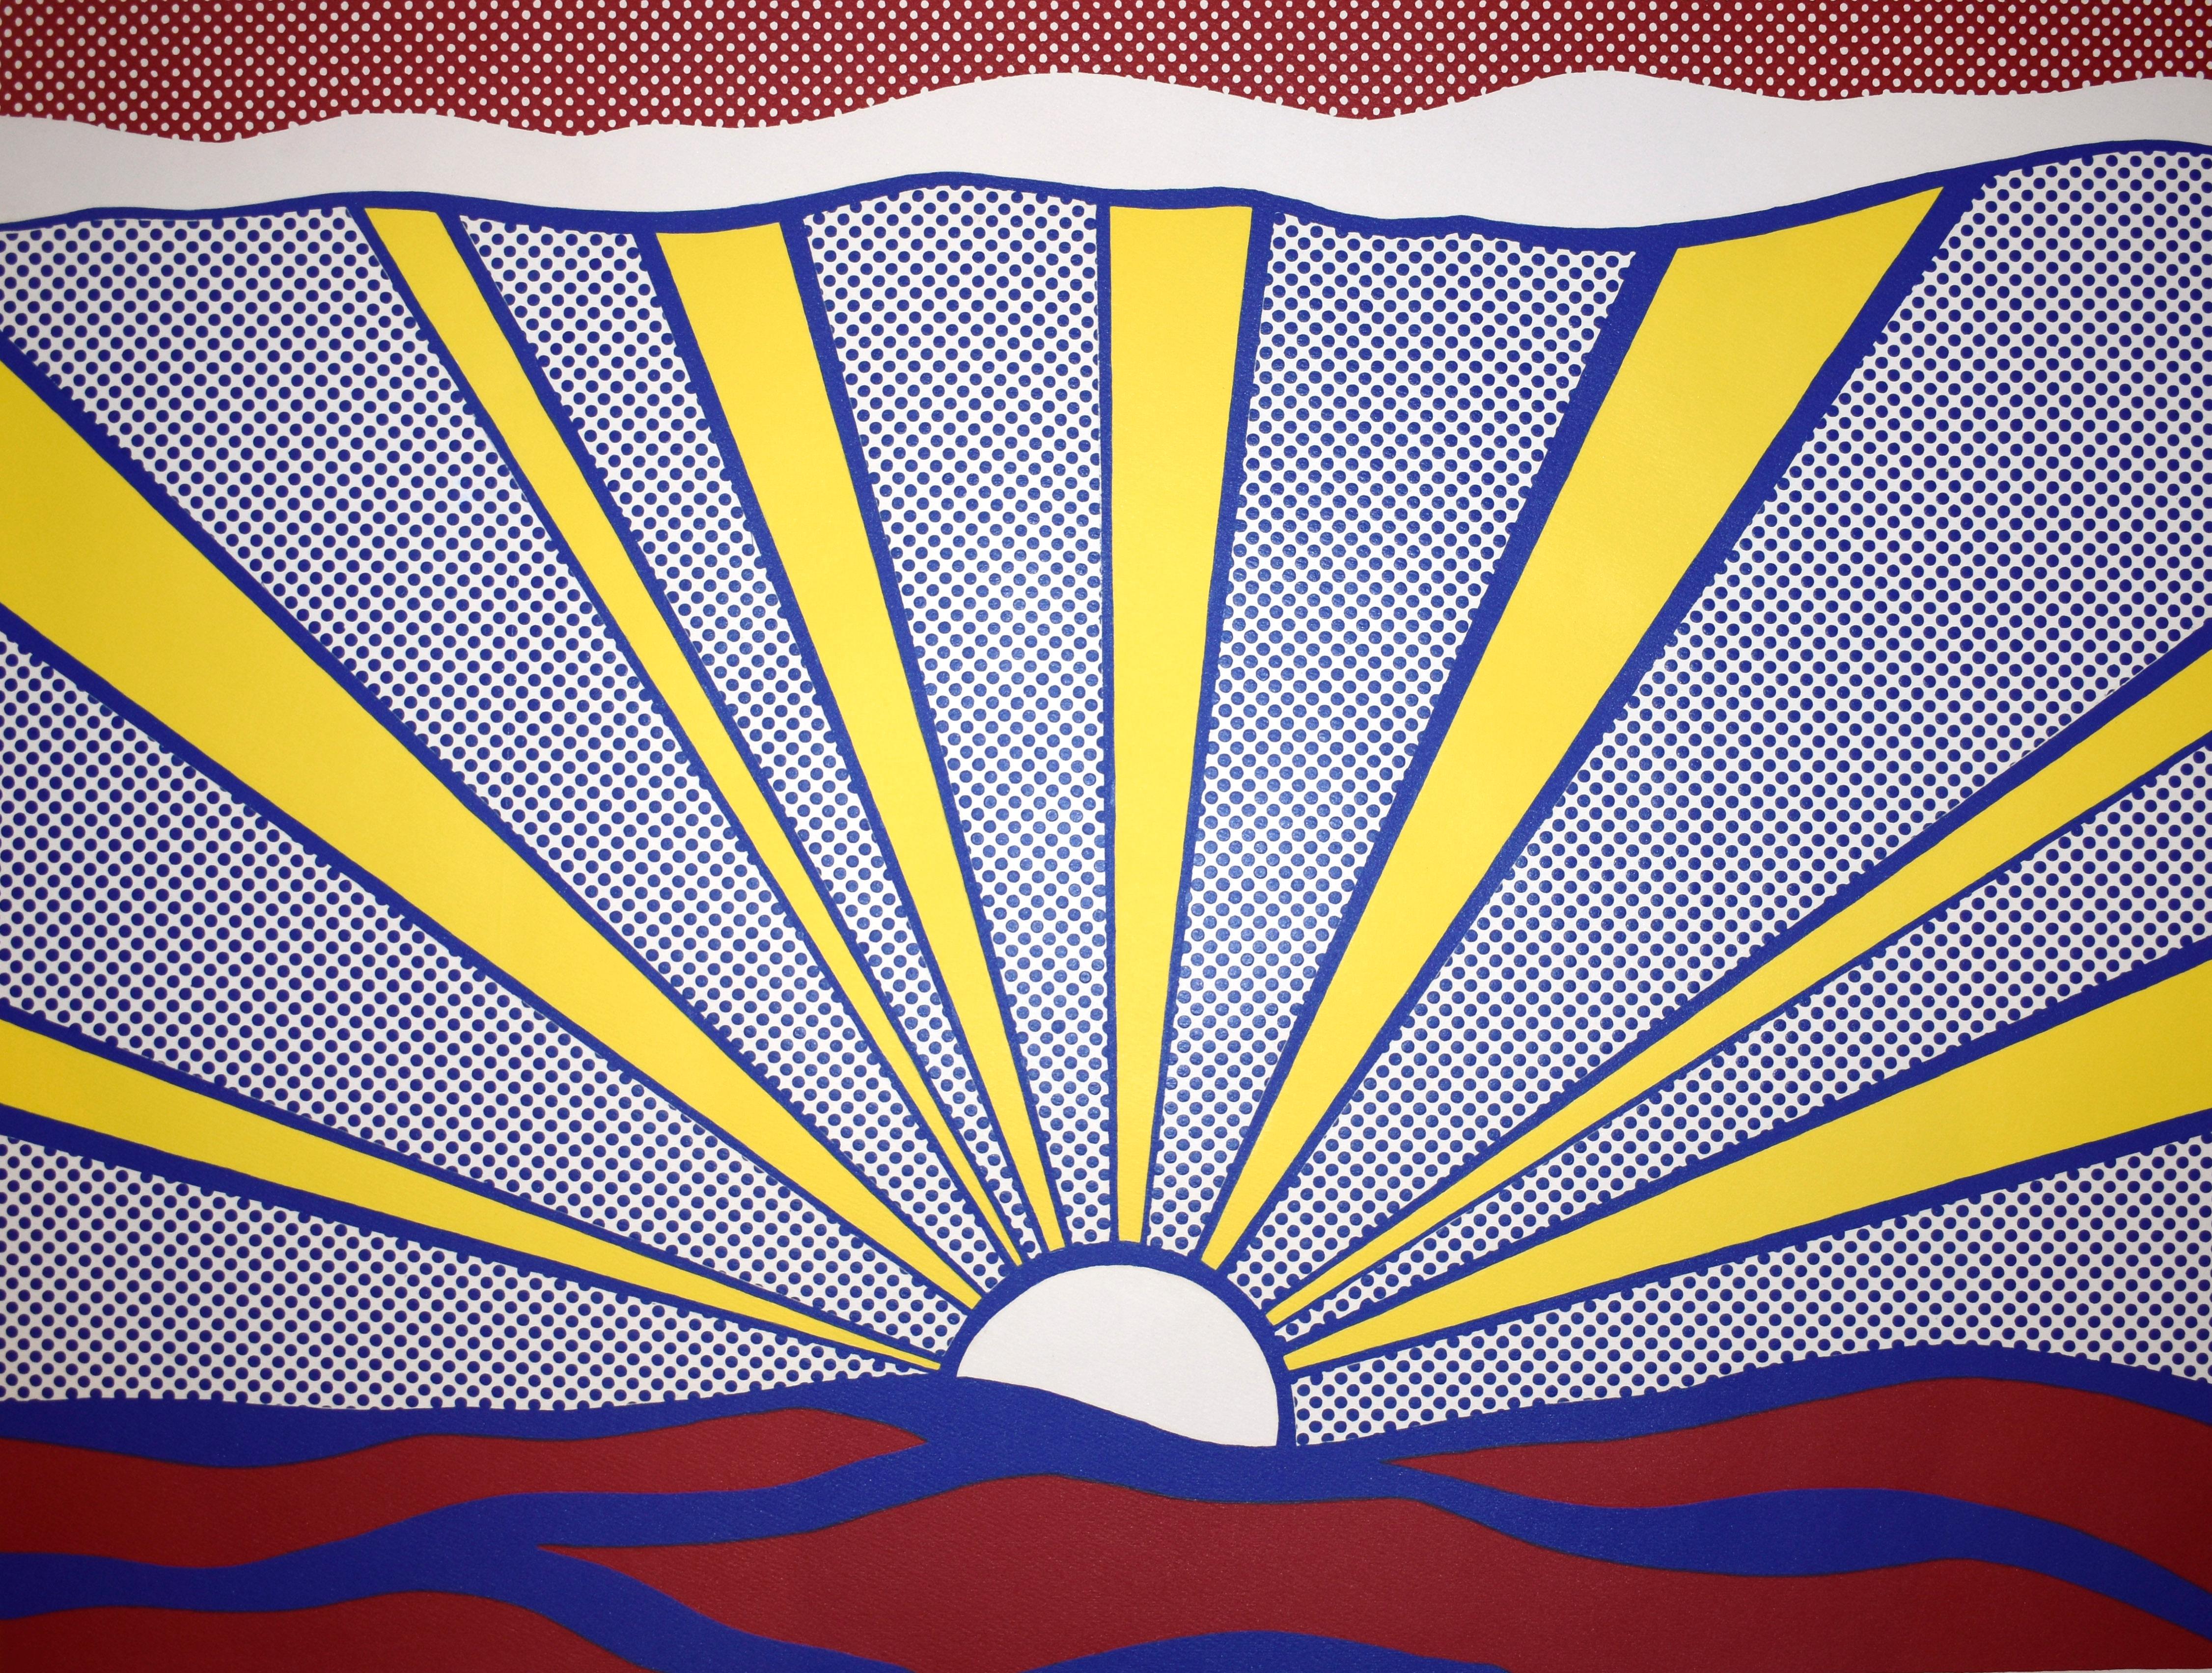 Sunrise - Print by Roy Lichtenstein